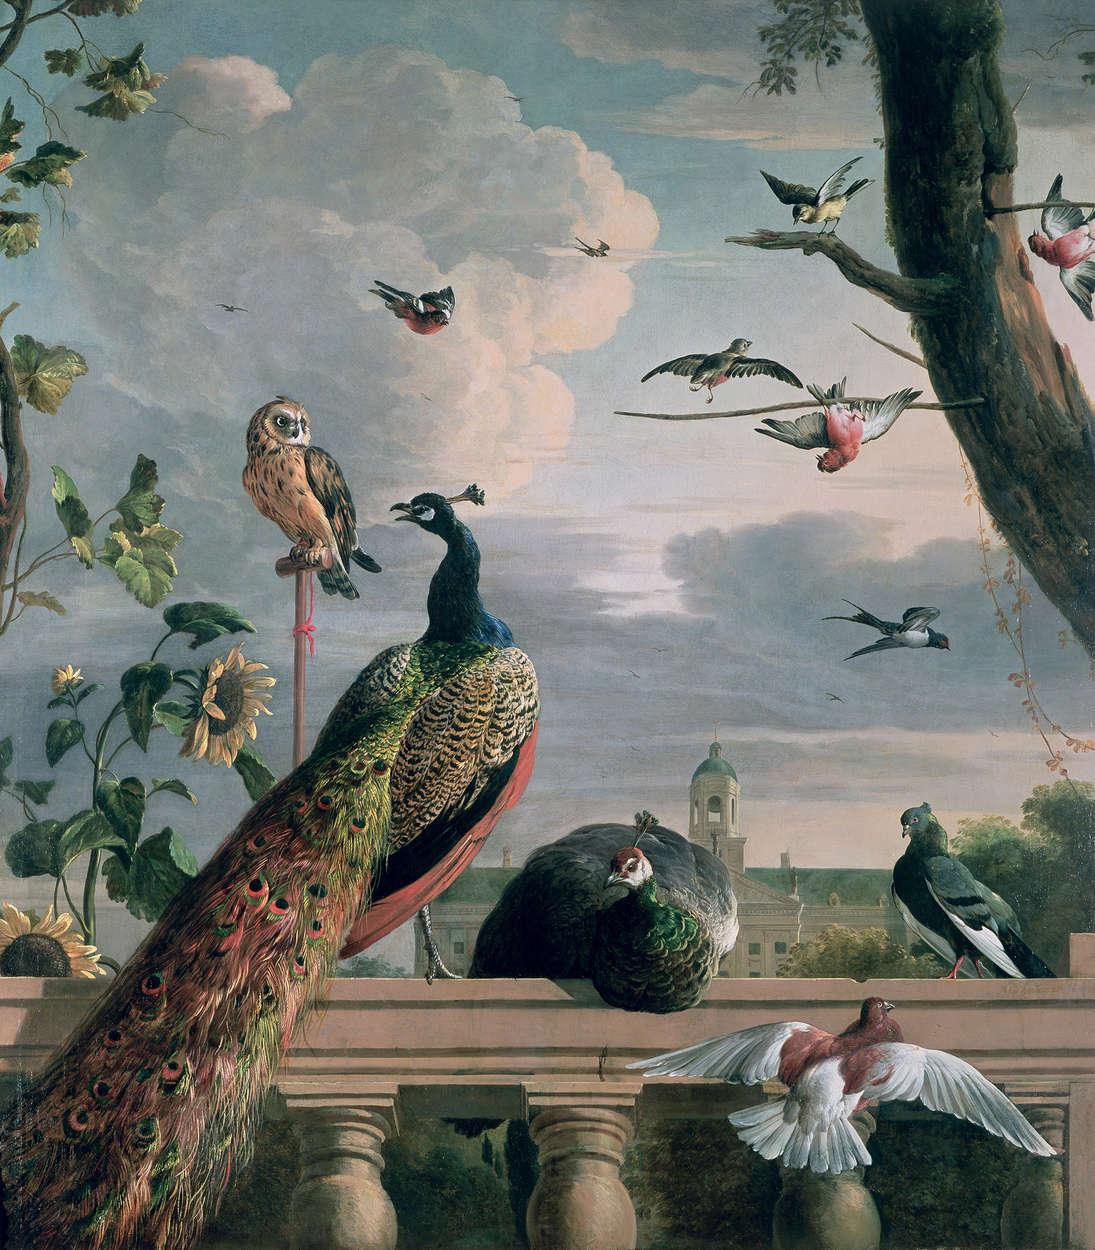             Fototapete "Palast Amsterdam mit exotischen Vögeln" von Melchoir de Hondecoeter
        